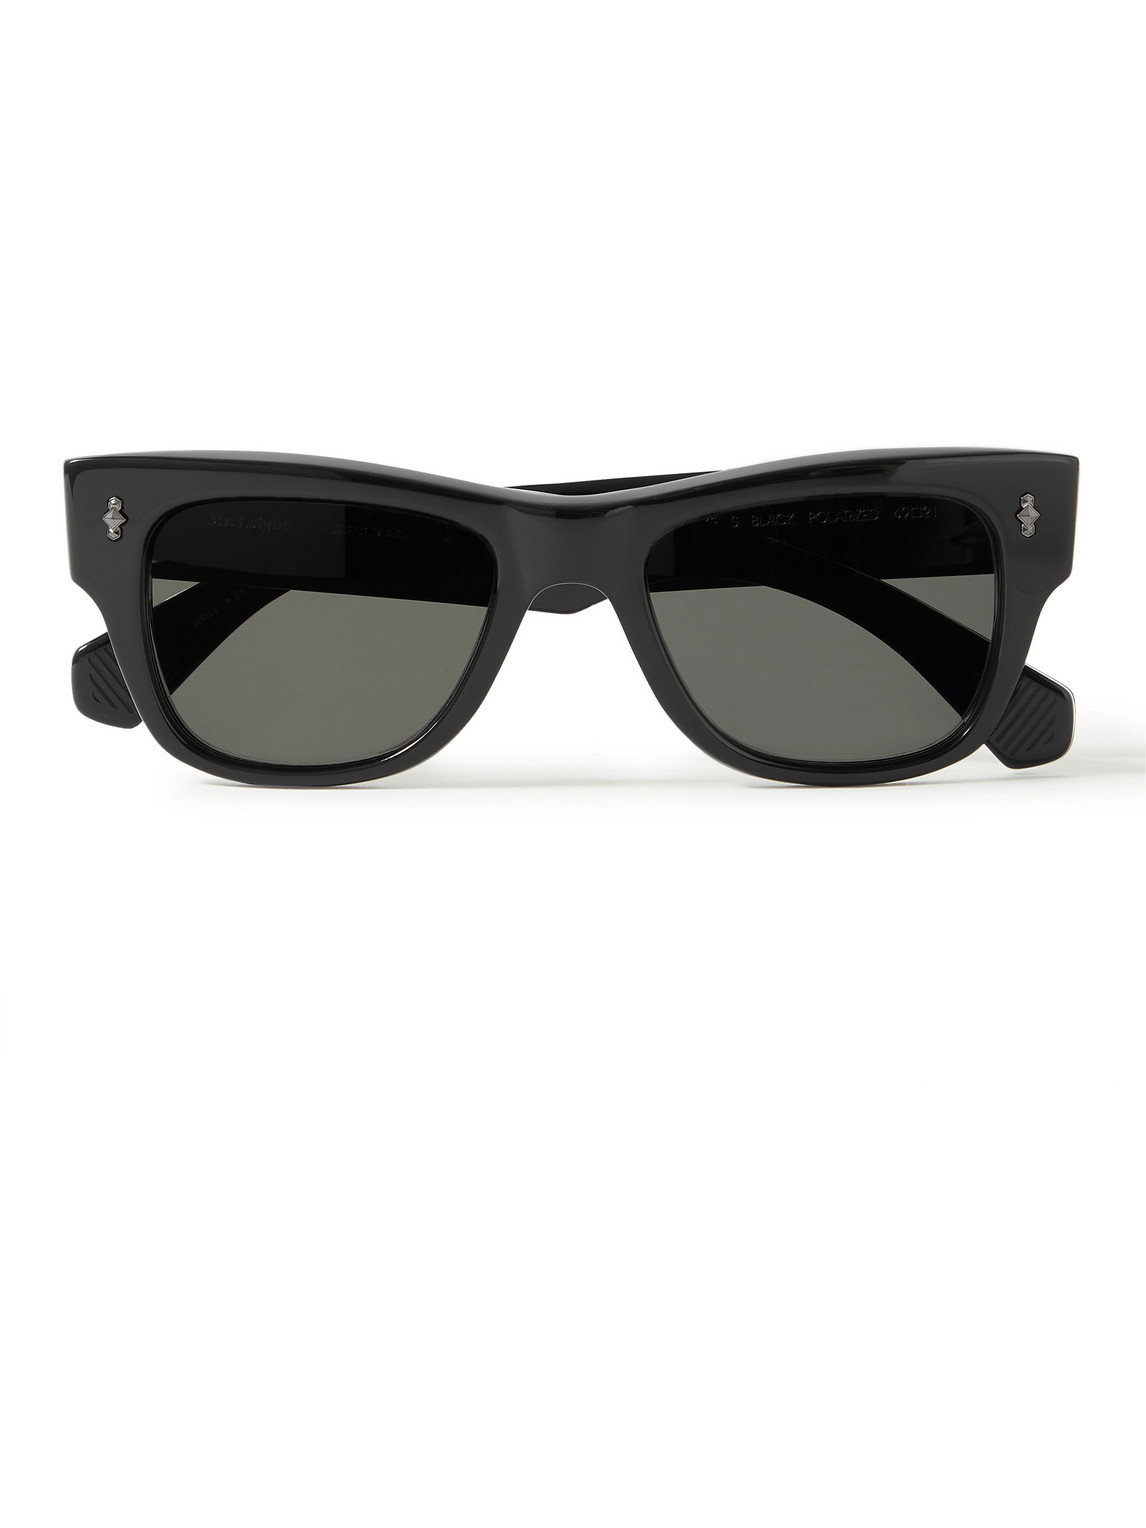 Mr Leight Duke S D-frame Acetate Sunglasses In Black